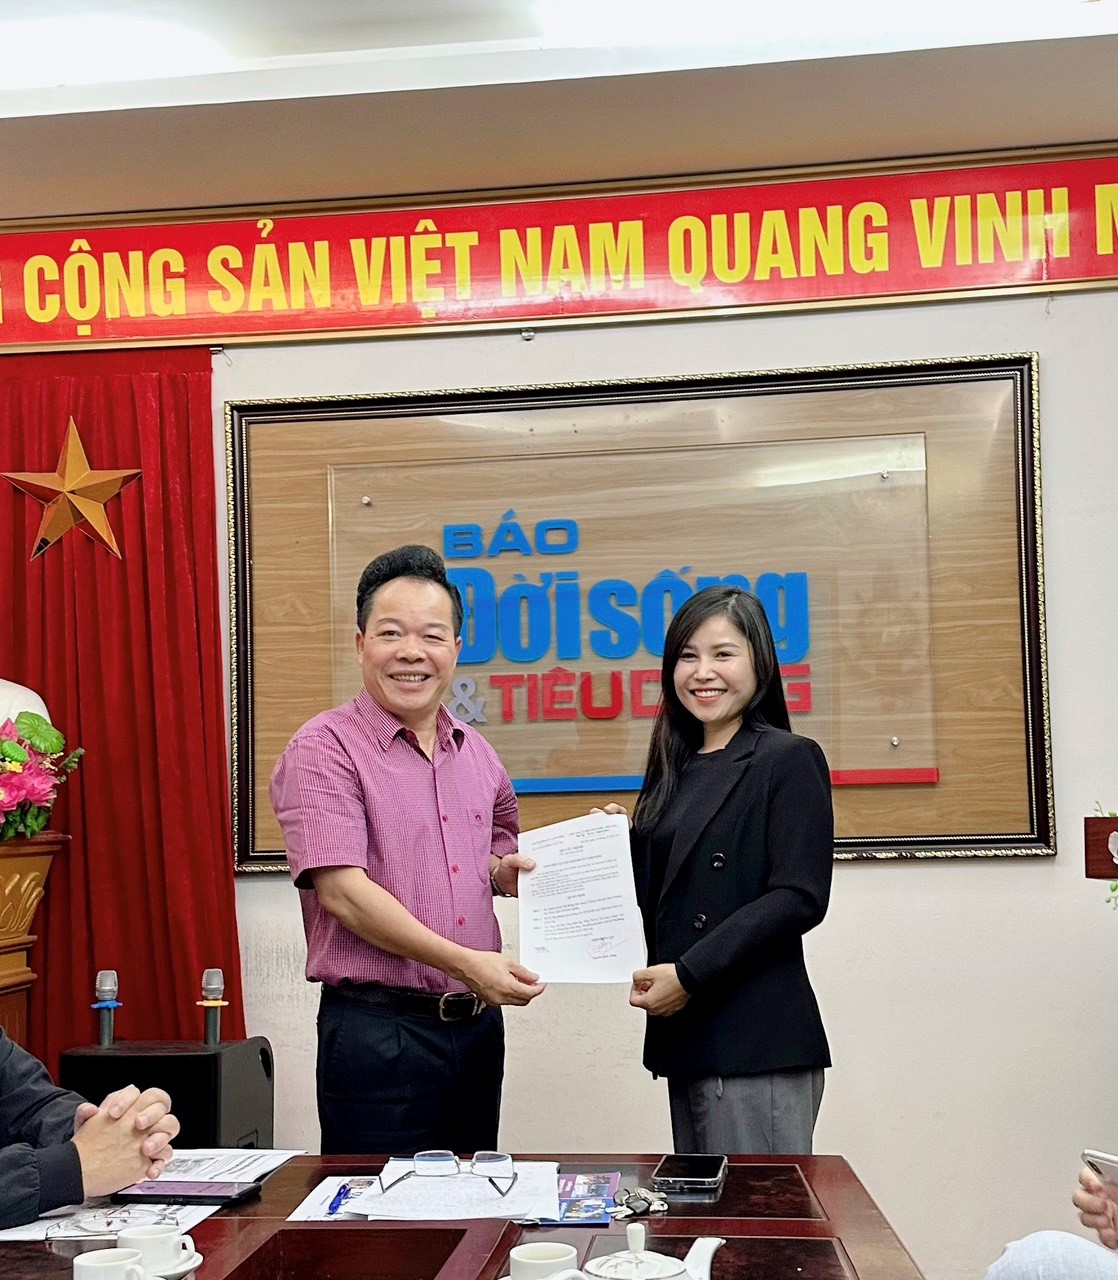 Ông Nguyễn Quốc Hùng - Tổng biên tập Tạp chí Kinh tế và Đồ uống đã trao quyết định bổ nhiệm Bà Lê Thị Dung giữ chức vụ Trưởng ban Pháp luật và Doanh nghiệp của Tạp chí.